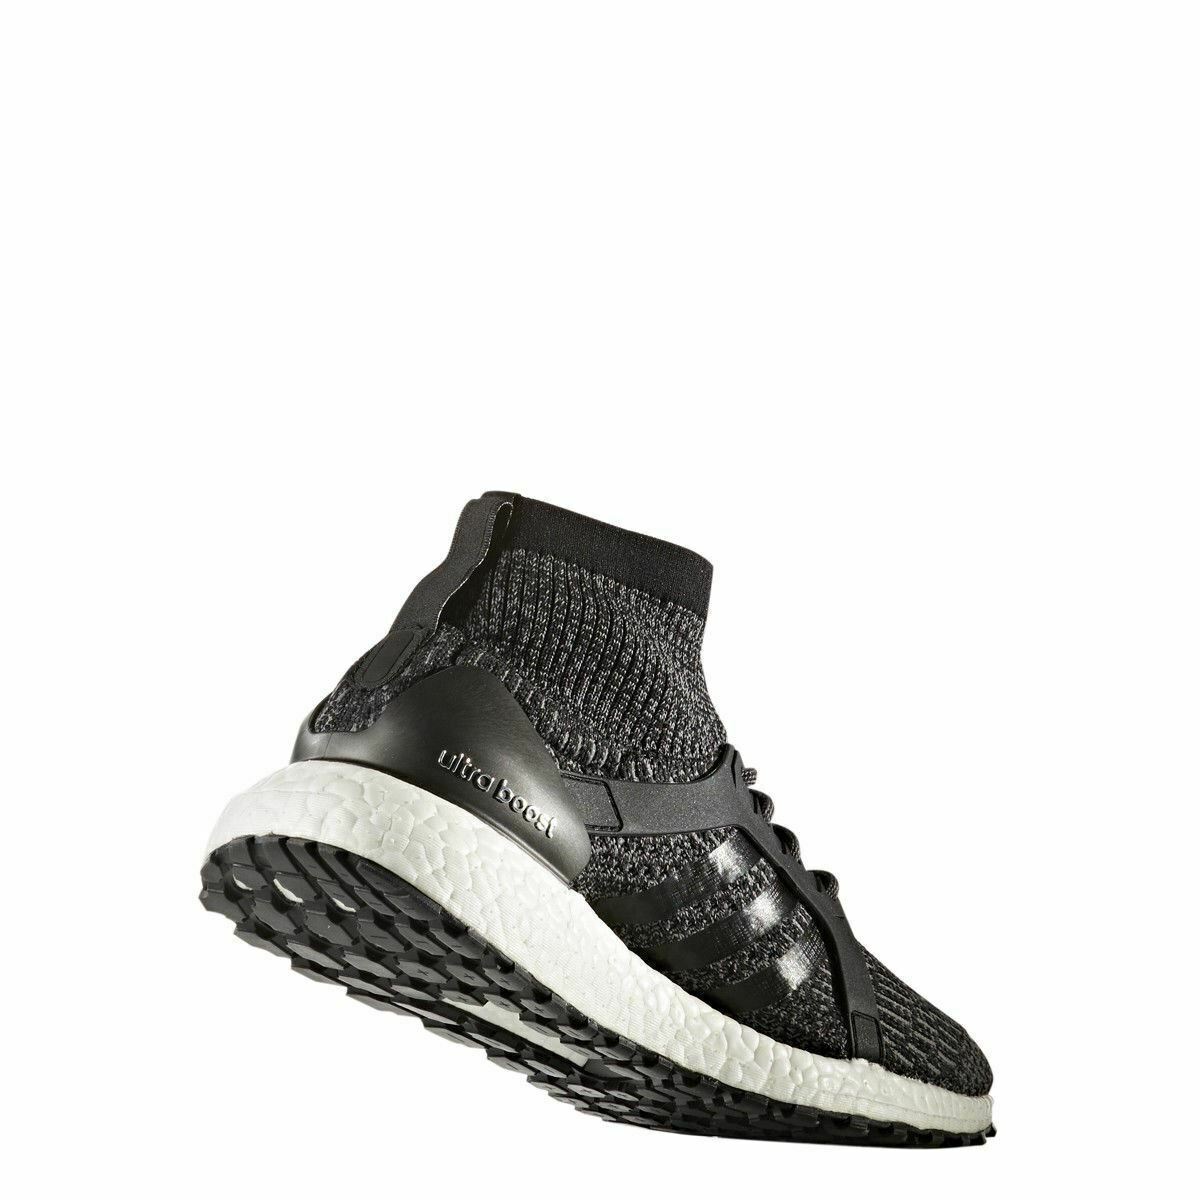 [BY1677] Womens Adidas Ultraboost X All Terrain - Black Ultra Boost Sneaker